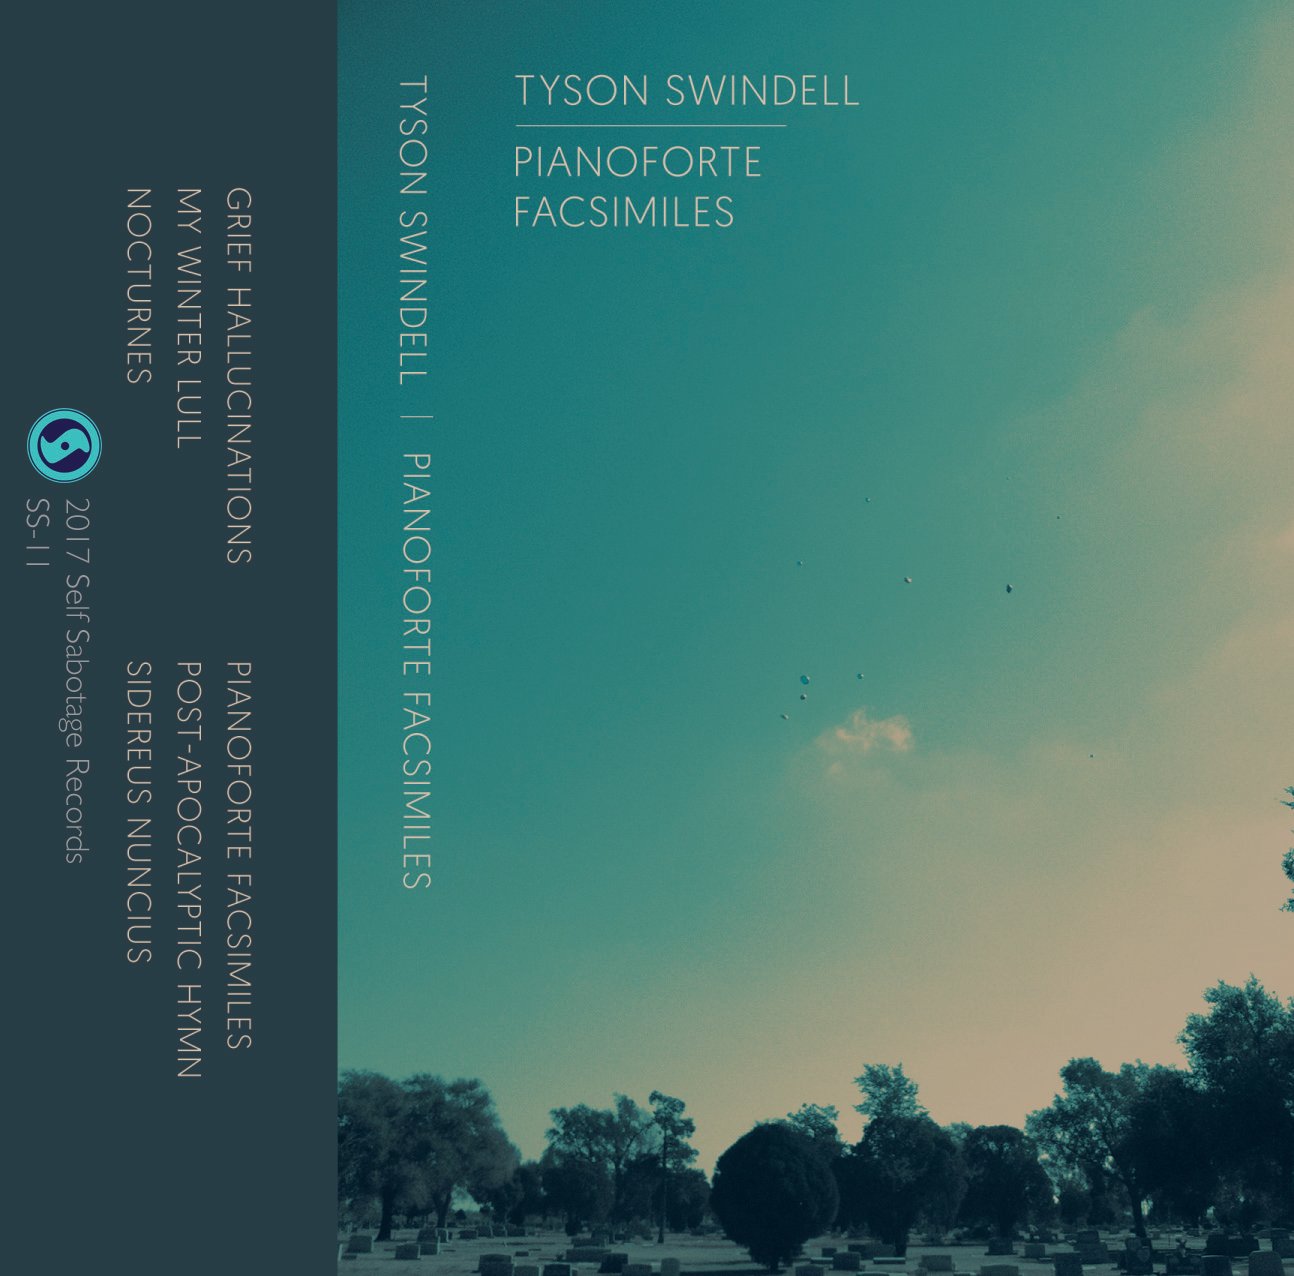 Tyson Swindell "Pianoforte Facsimiles" CS